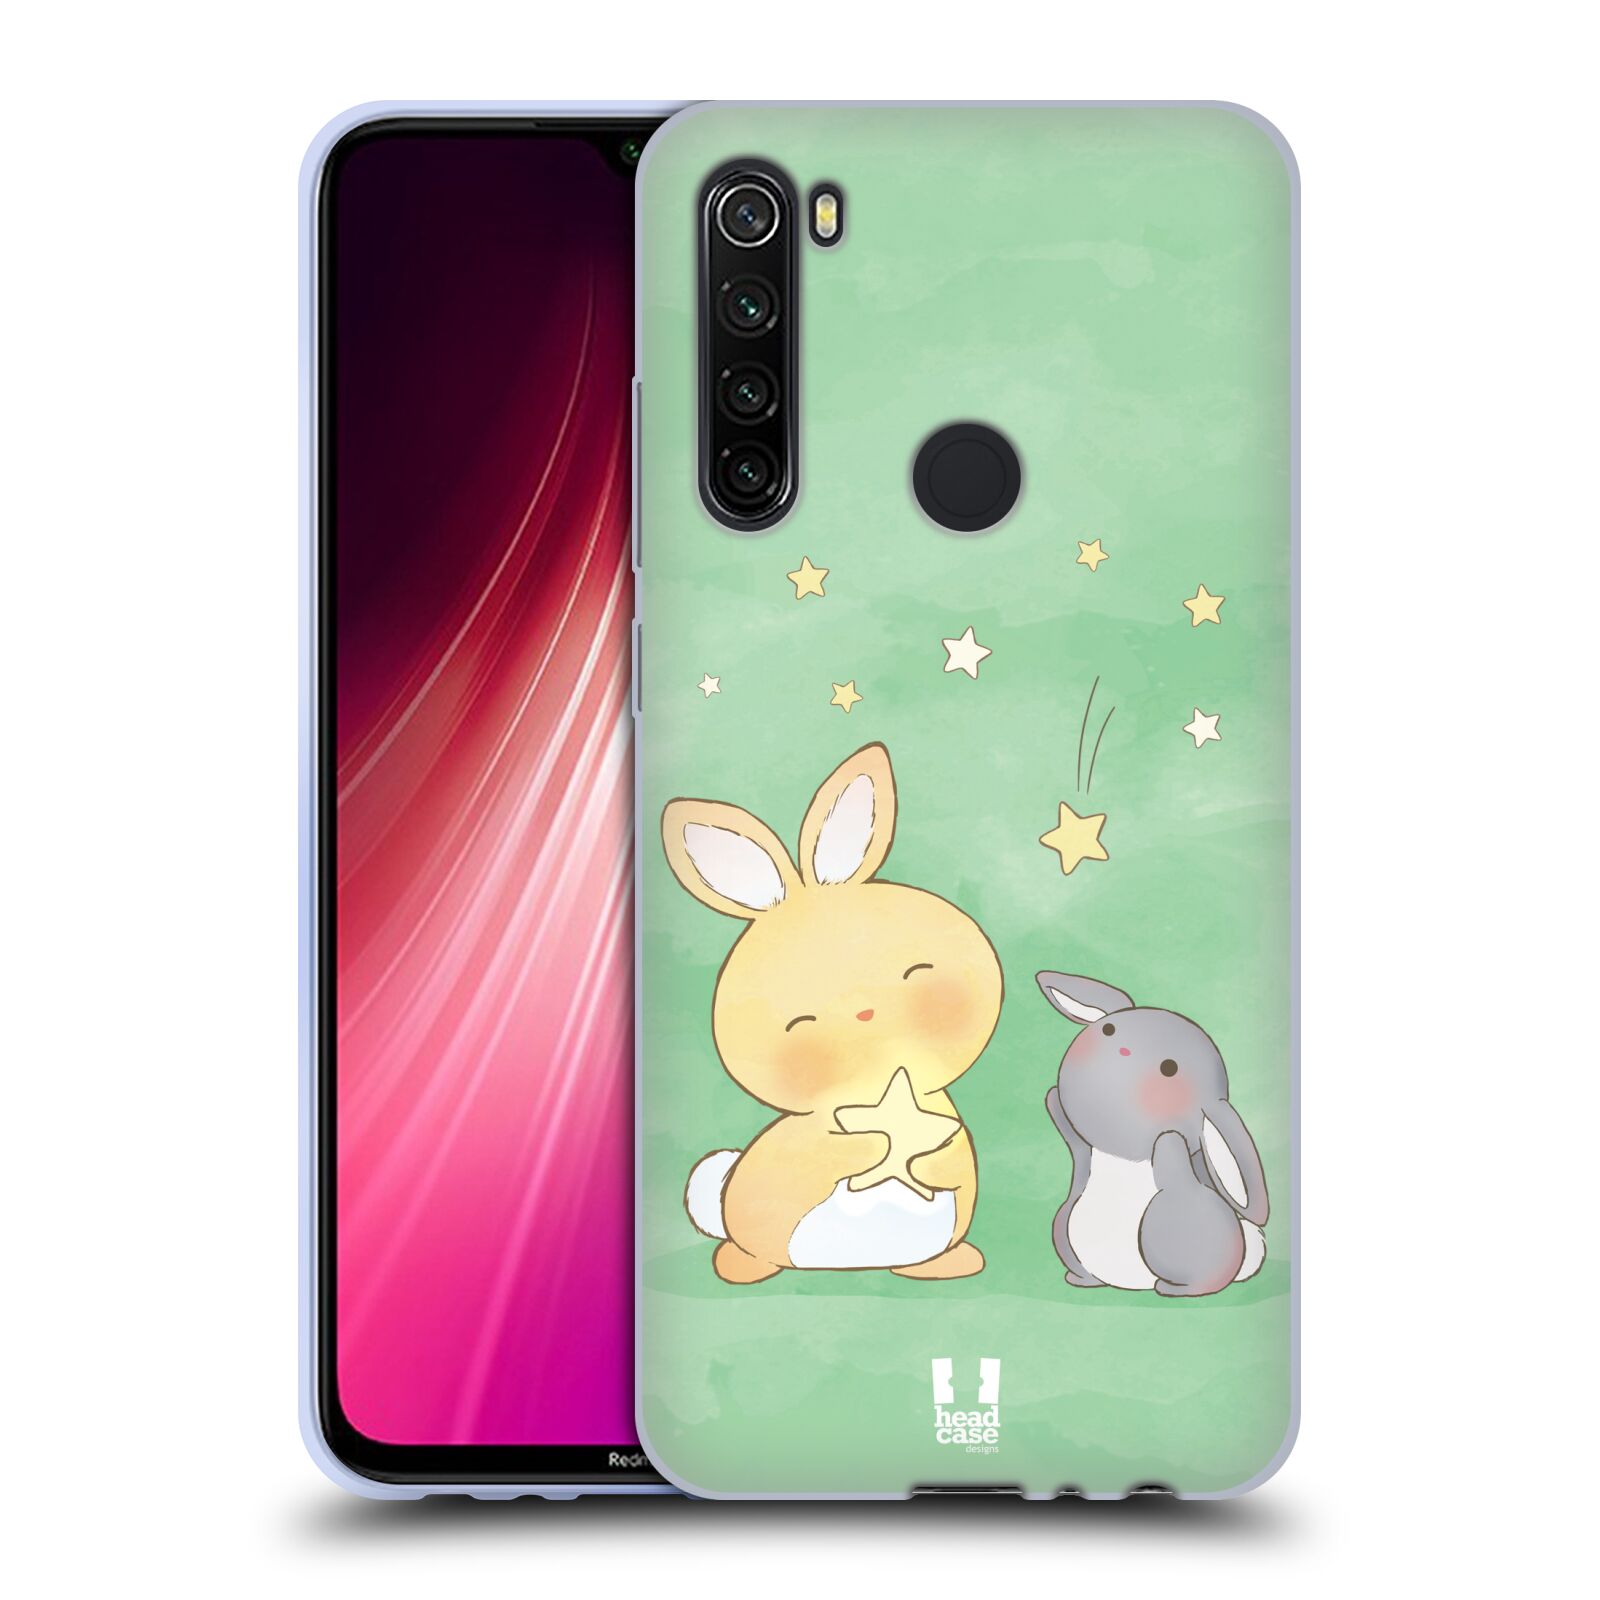 Plastový obal HEAD CASE na mobil Xiaomi Redmi Note 8T vzor králíček a hvězdy zelená